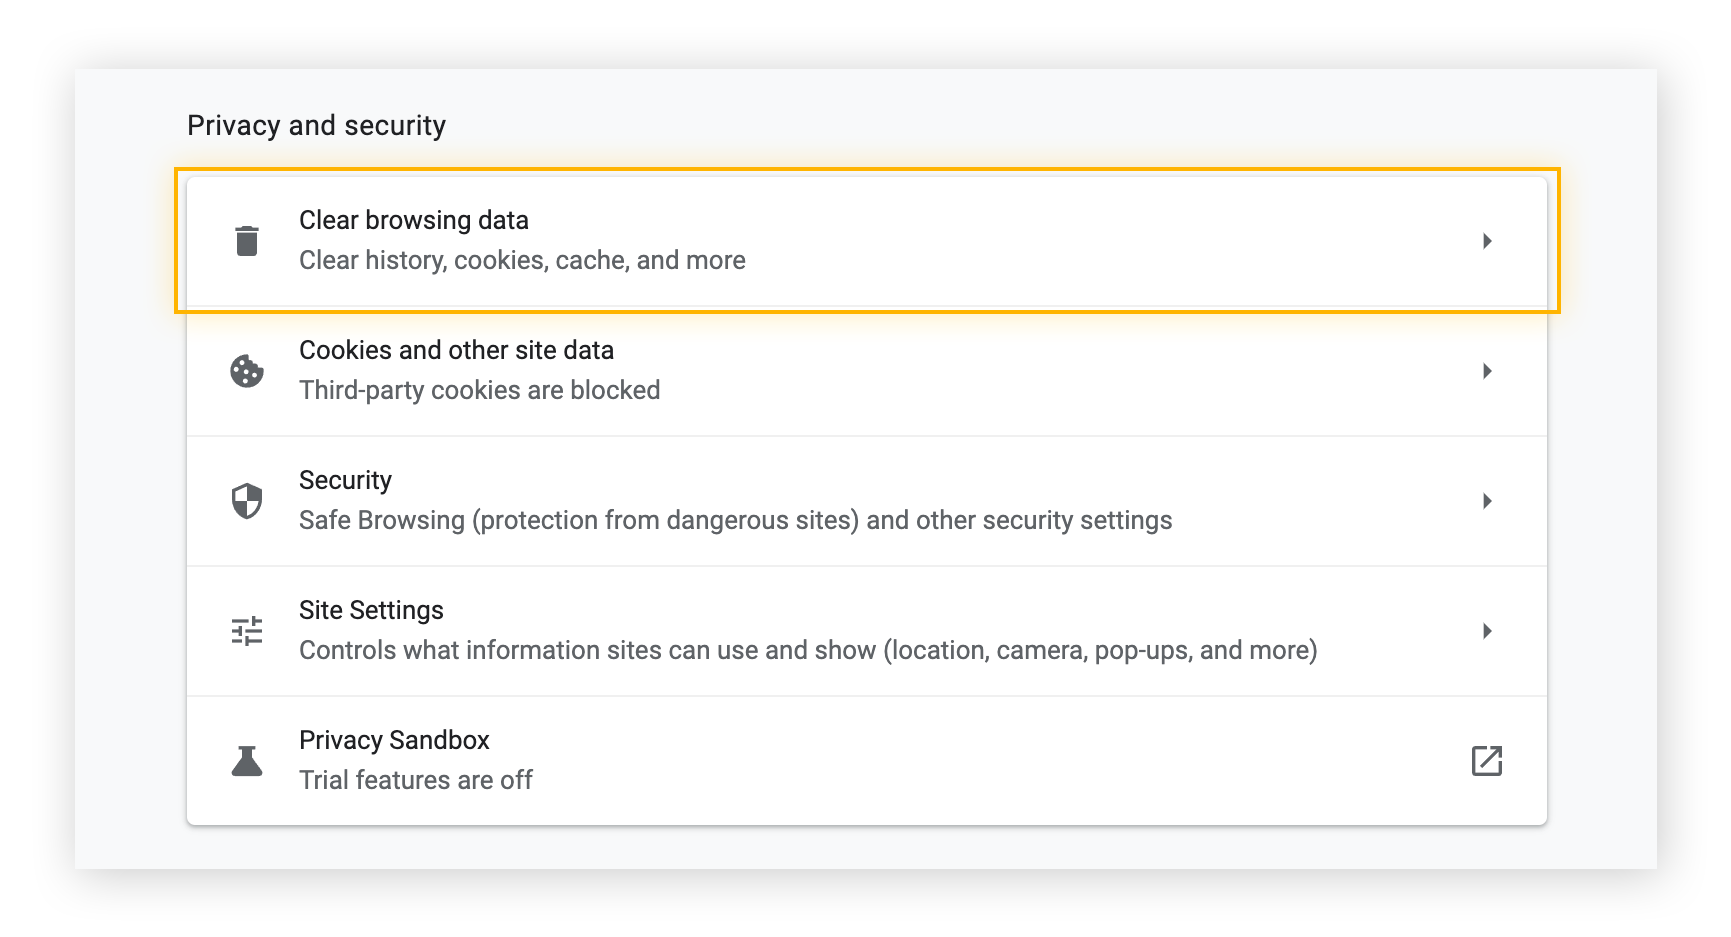 Configuración de privacidad y seguridad en Chrome